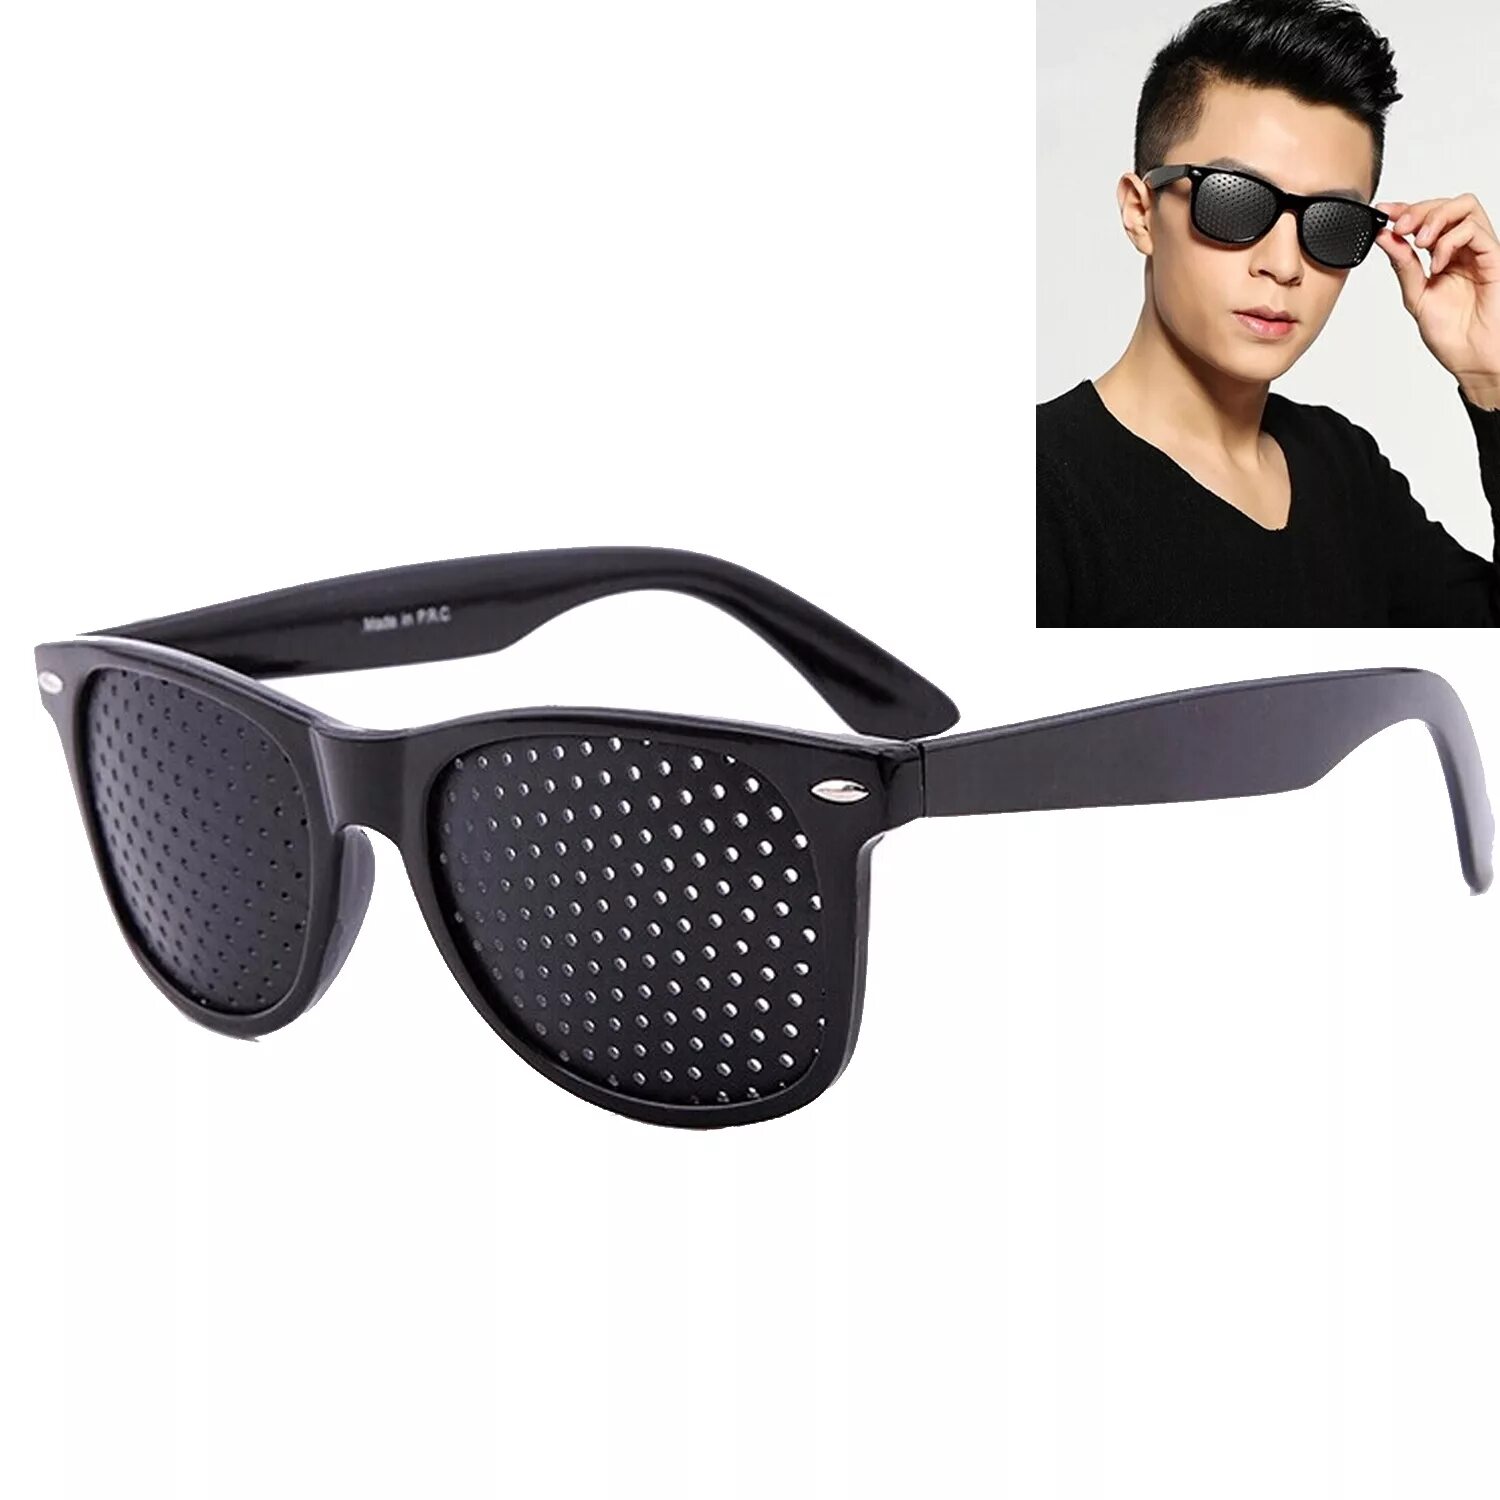 Glasses pc. Mr 8858 c1 очки. Очки солнцезащитные Fendi occhiali. Pinhole очки. Очки с отверстиями.